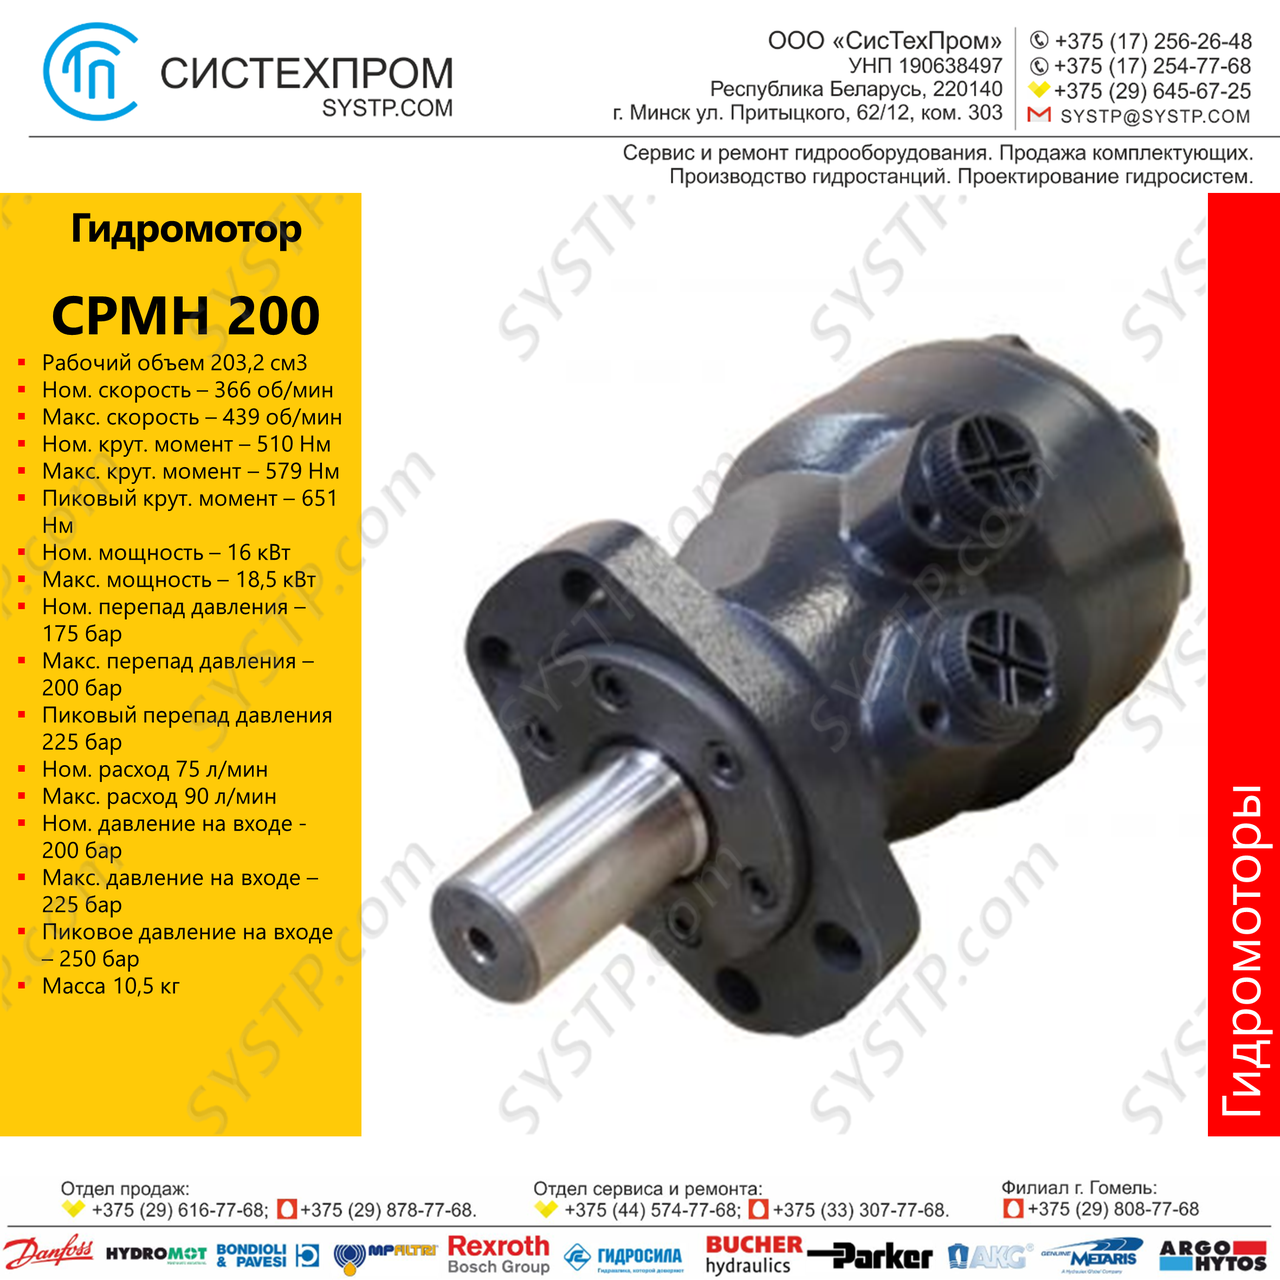 Гидромотор CPMH 200, фото 1